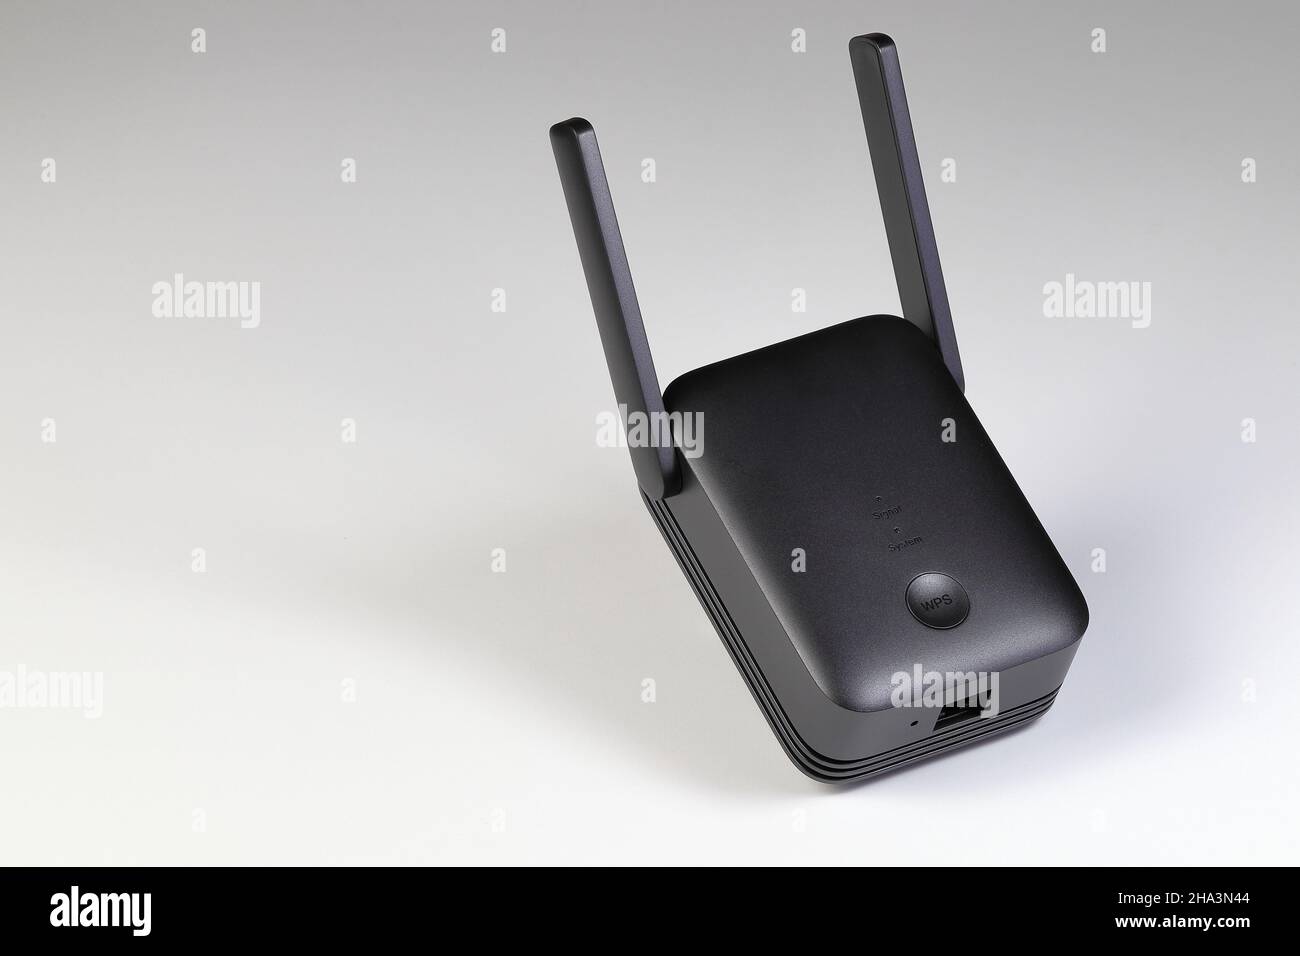 Wifi repeater immagini e fotografie stock ad alta risoluzione - Alamy